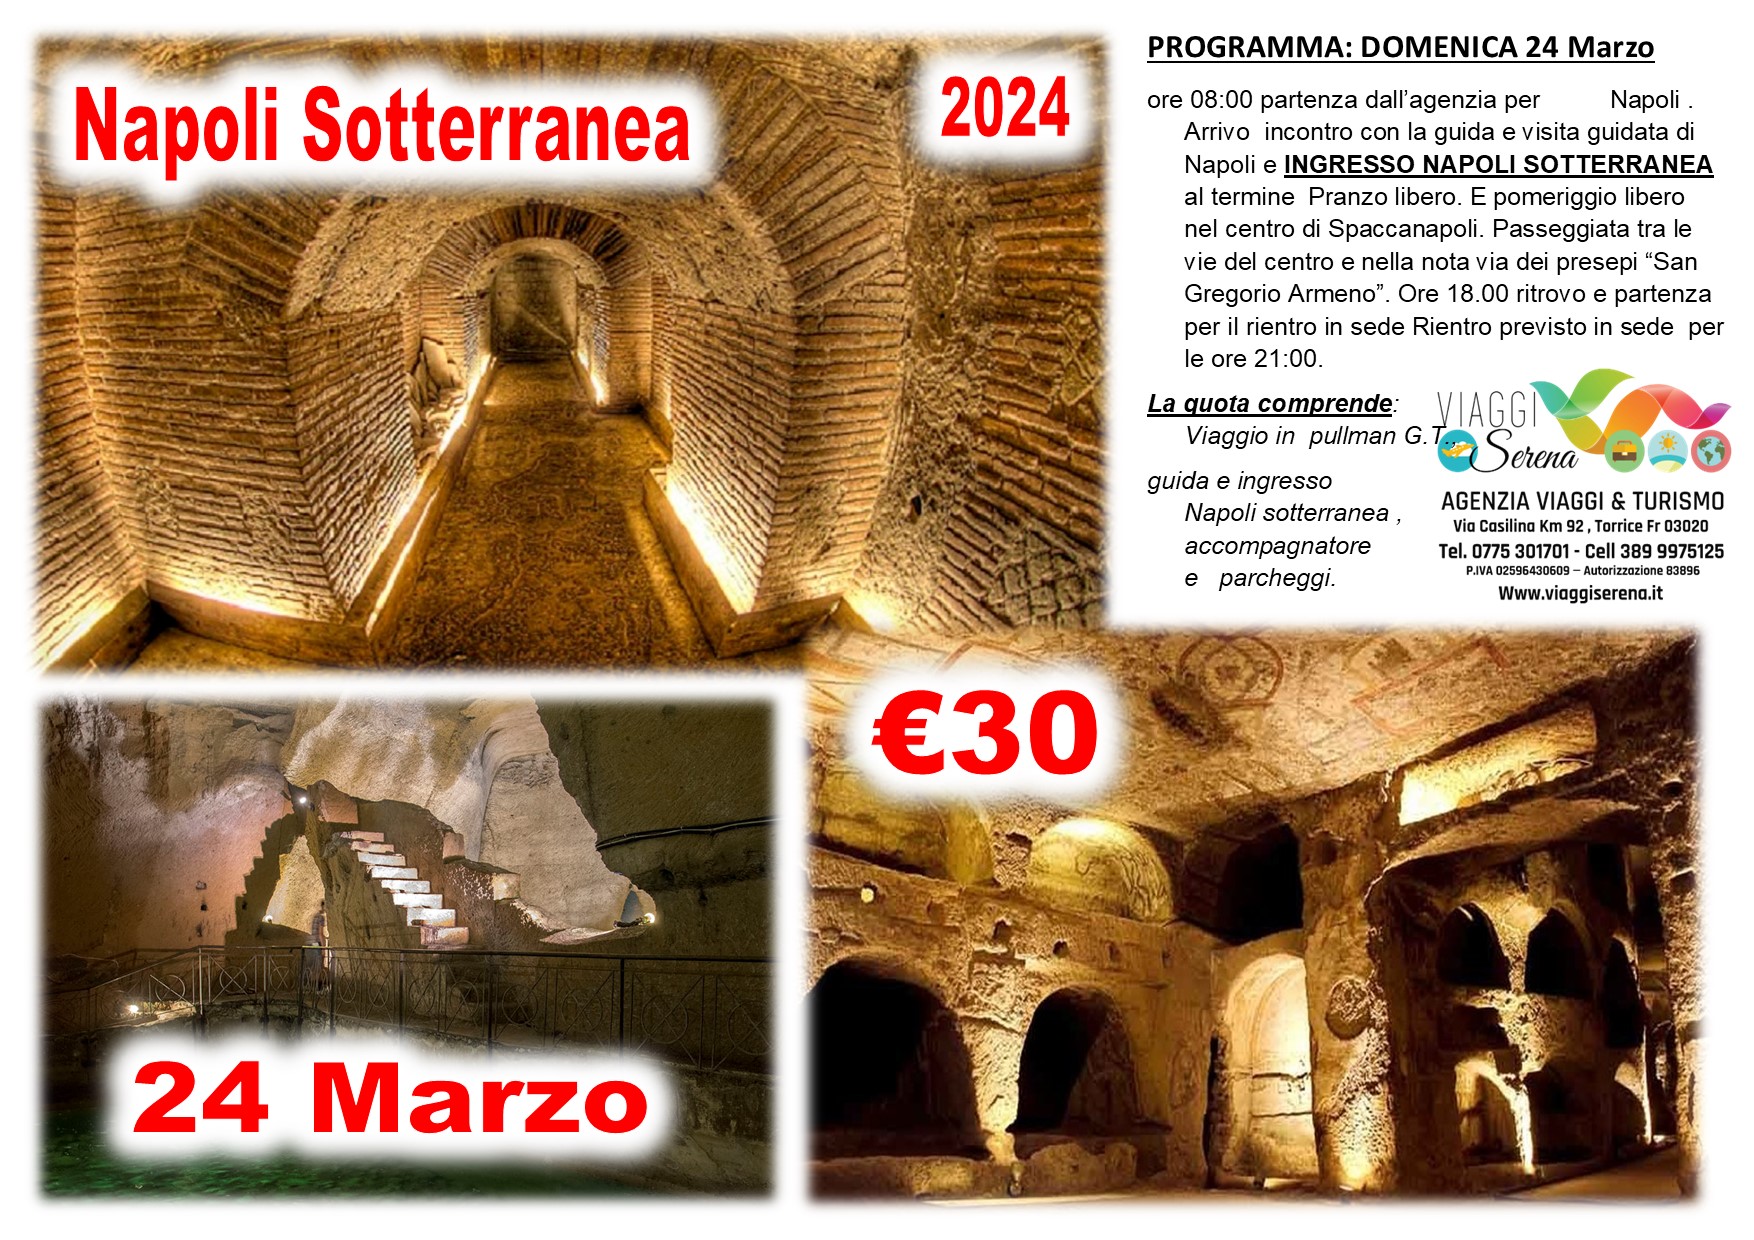 Viaggi di gruppo: Napoli Sotterranea & Napoli centro 24 Marzo €30,00